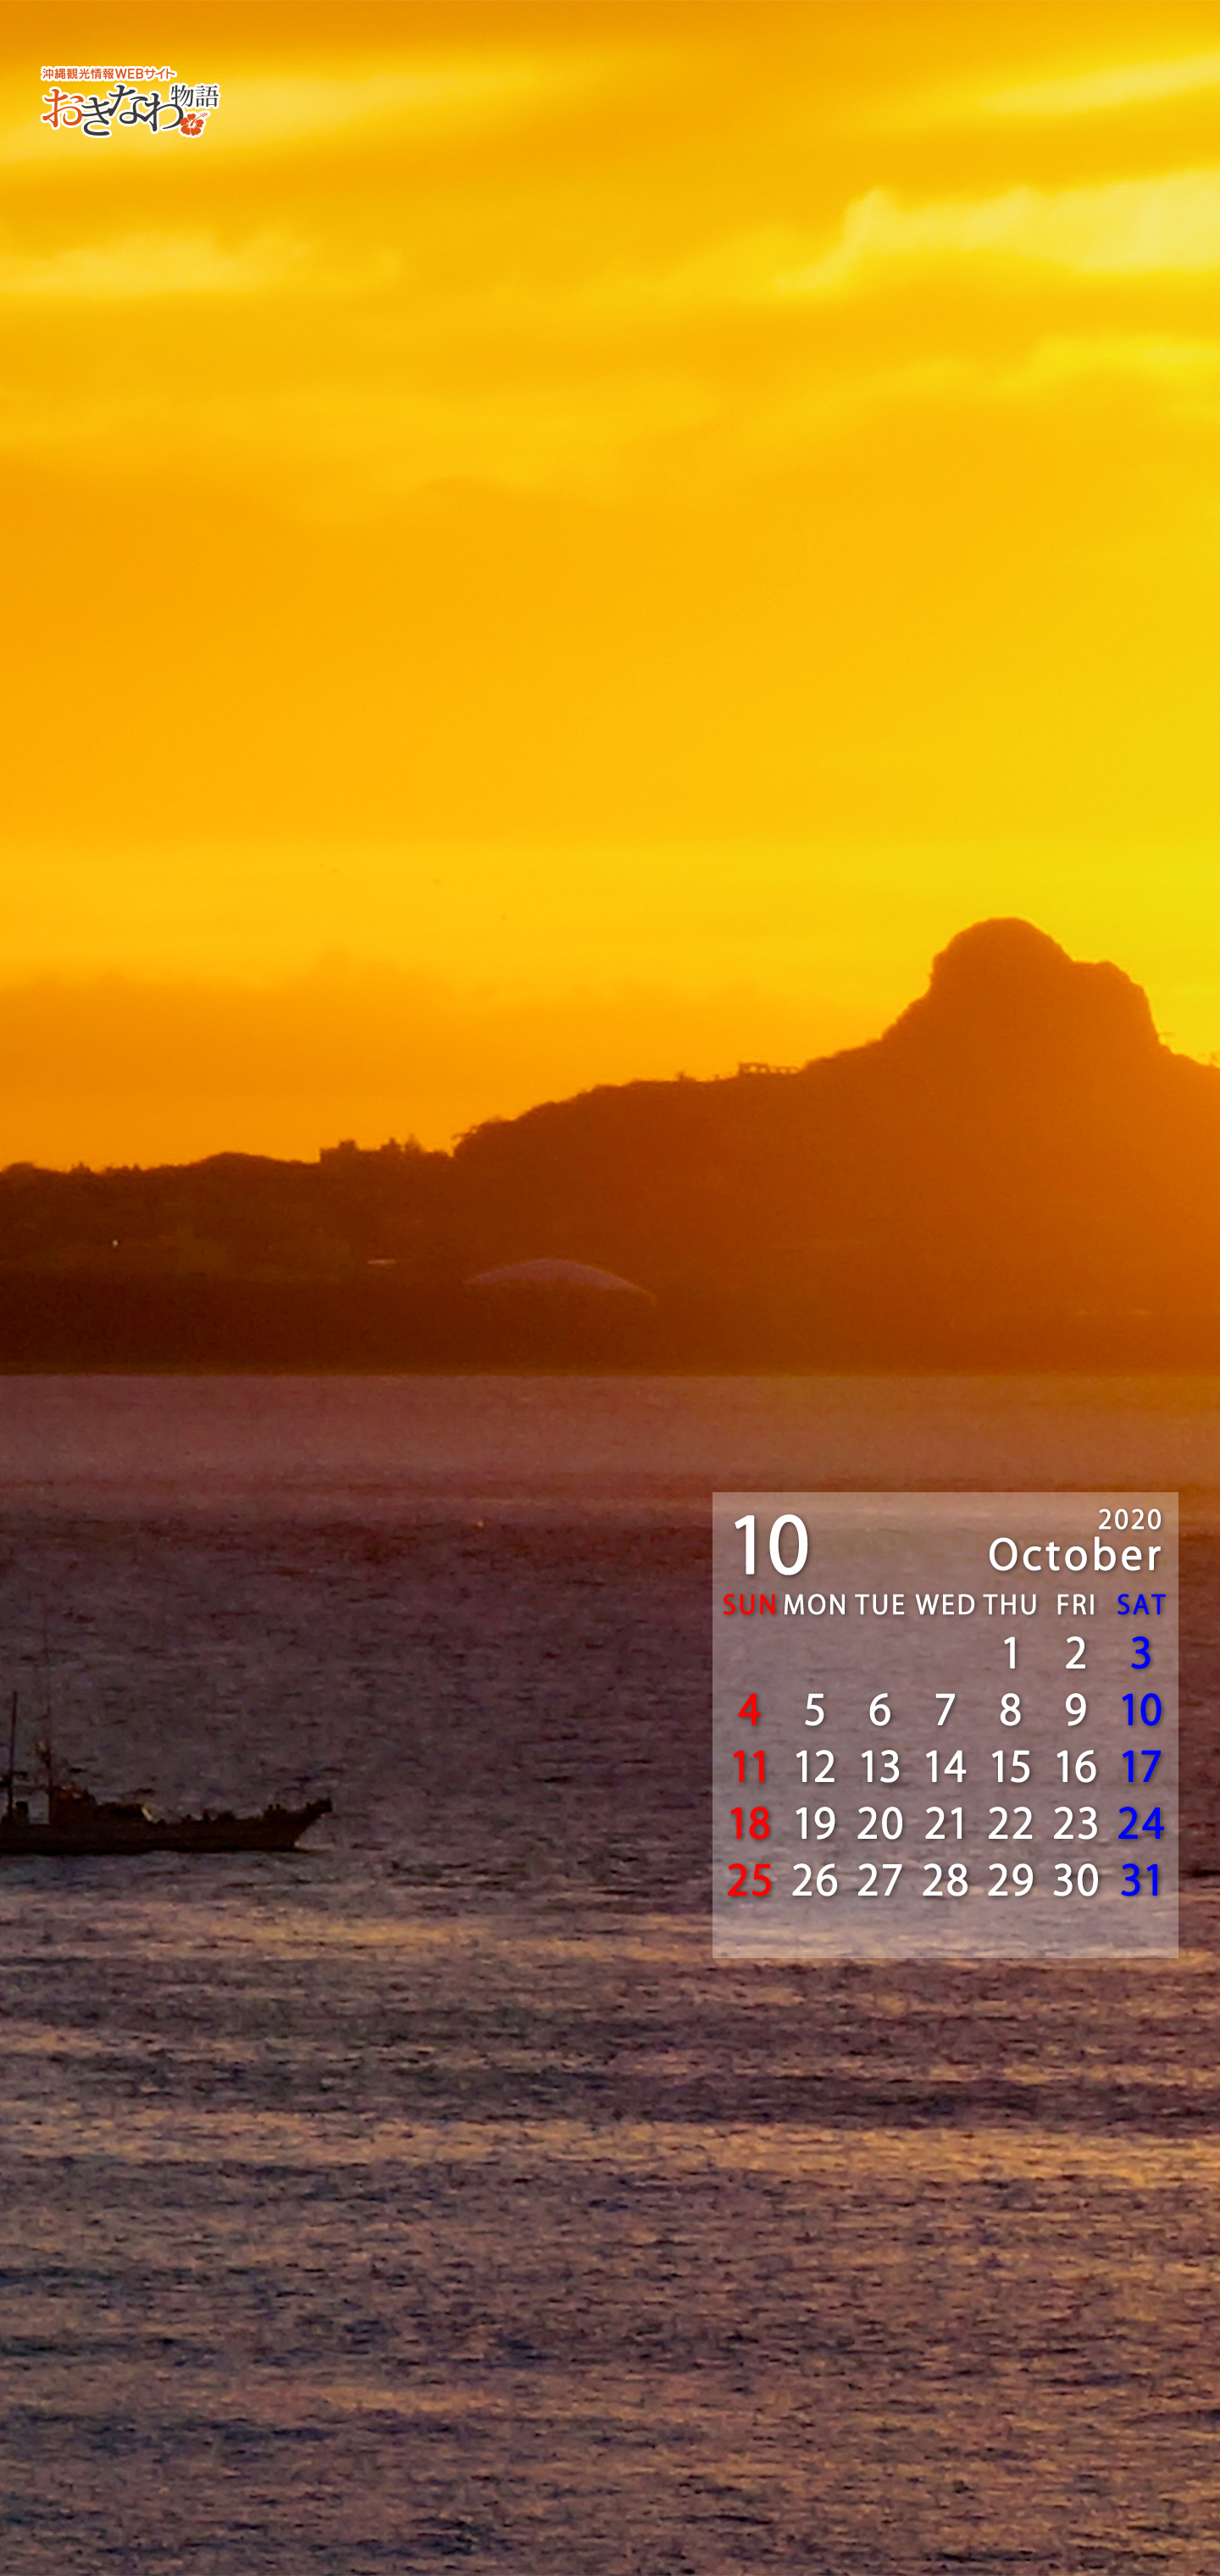 10月の壁紙カレンダー 沖縄観光情報webサイト おきなわ物語